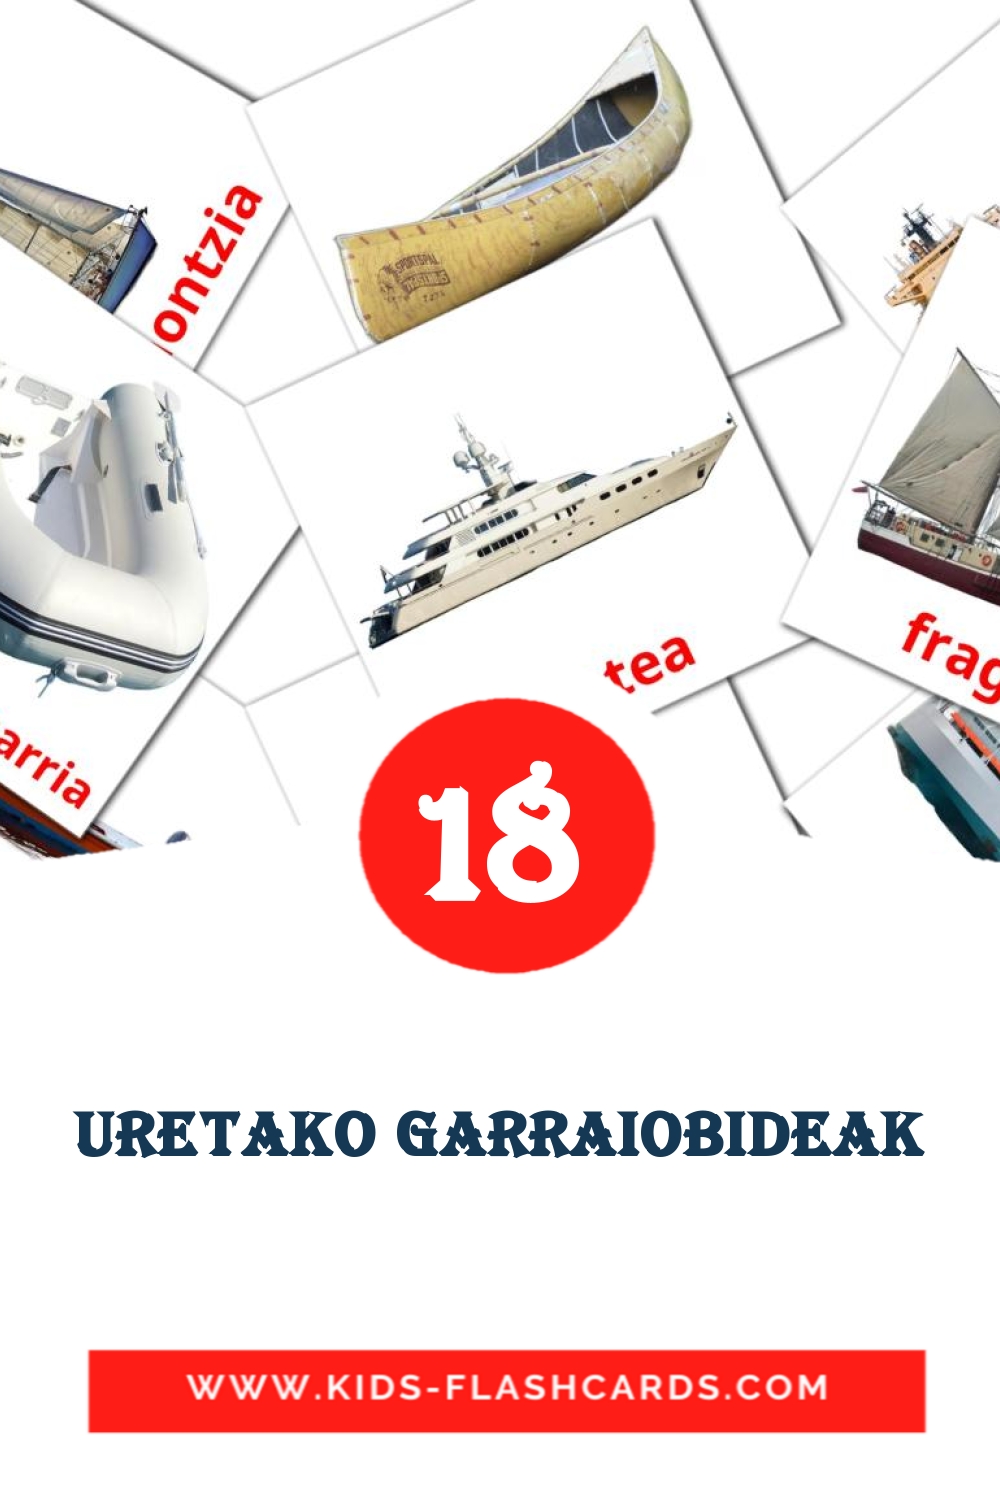 Uretako garraiobideak на баскском для Детского Сада (18 карточек)